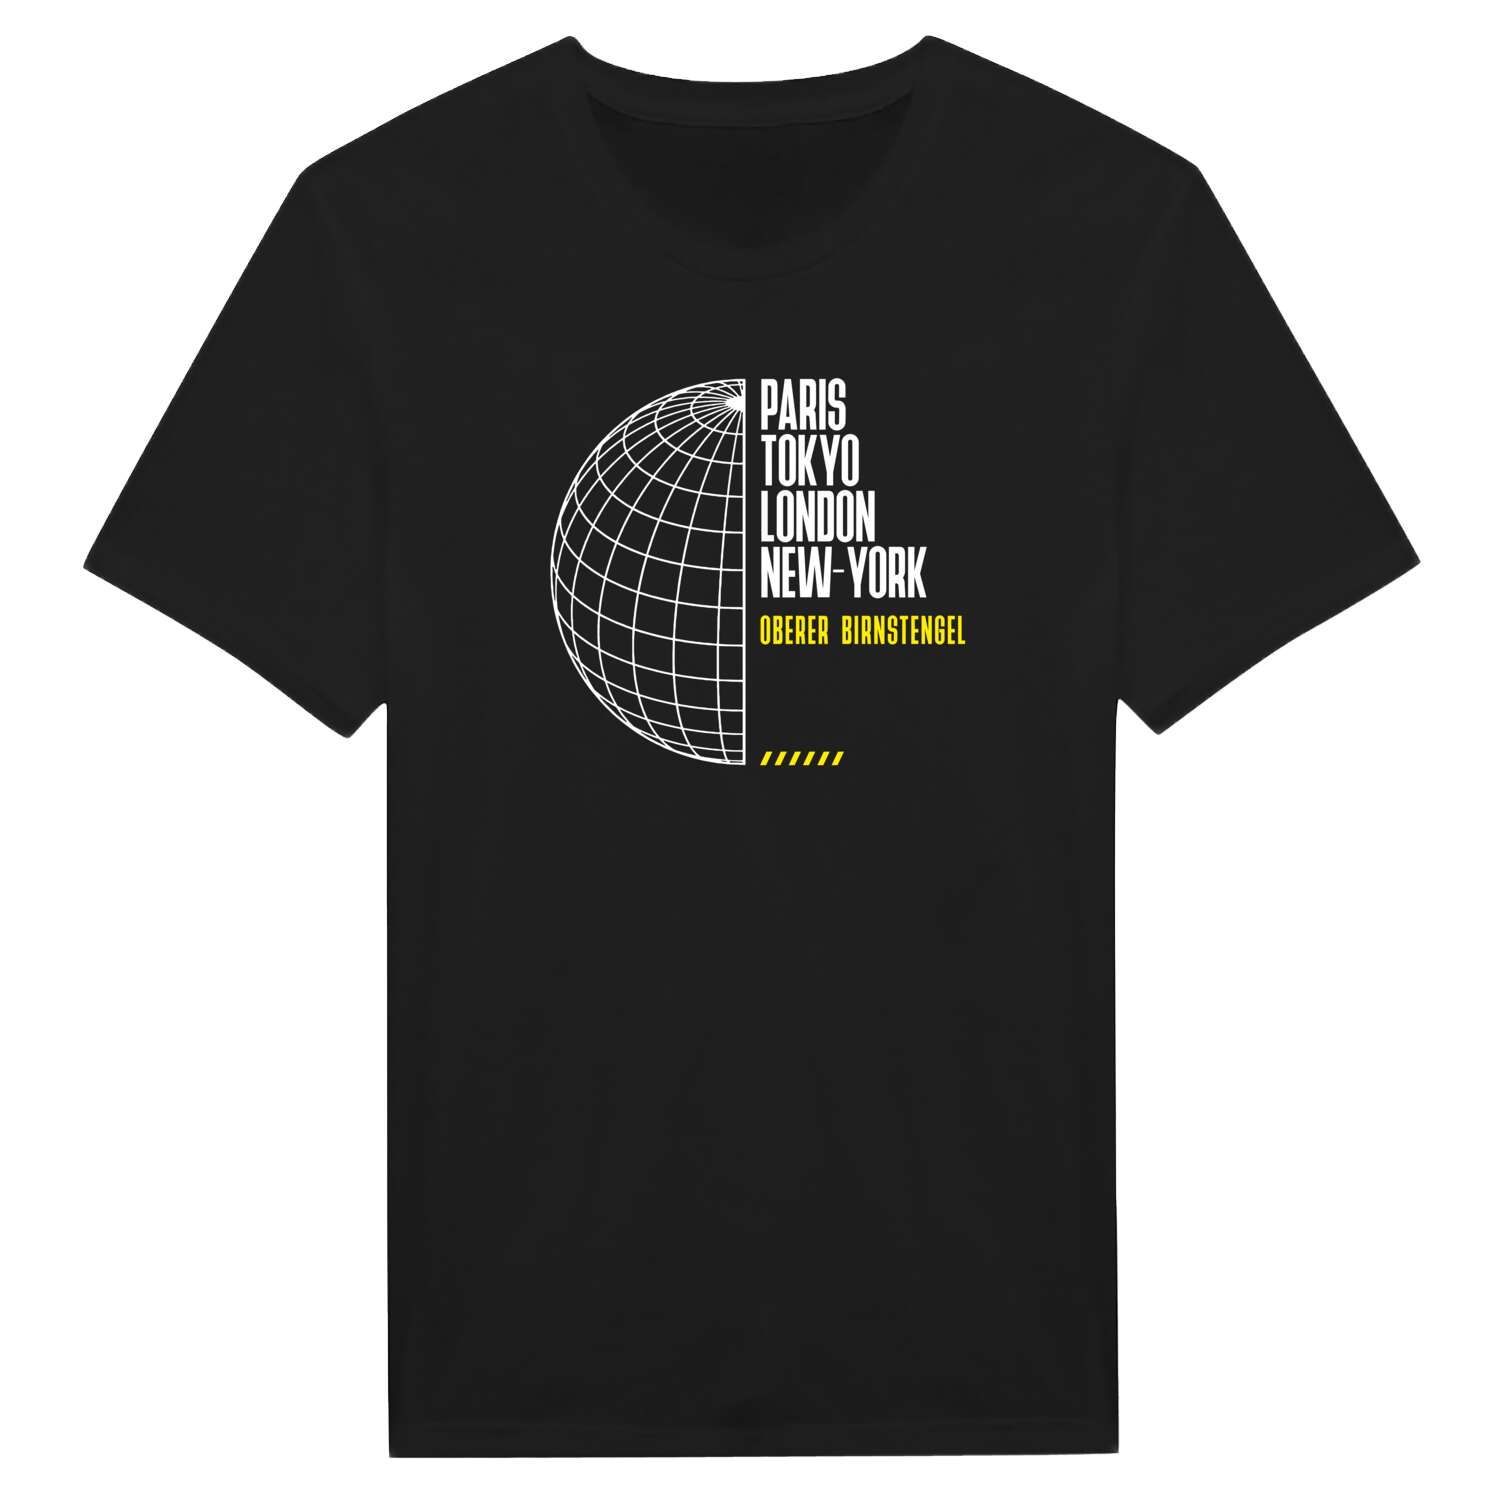 Oberer Birnstengel T-Shirt »Paris Tokyo London«